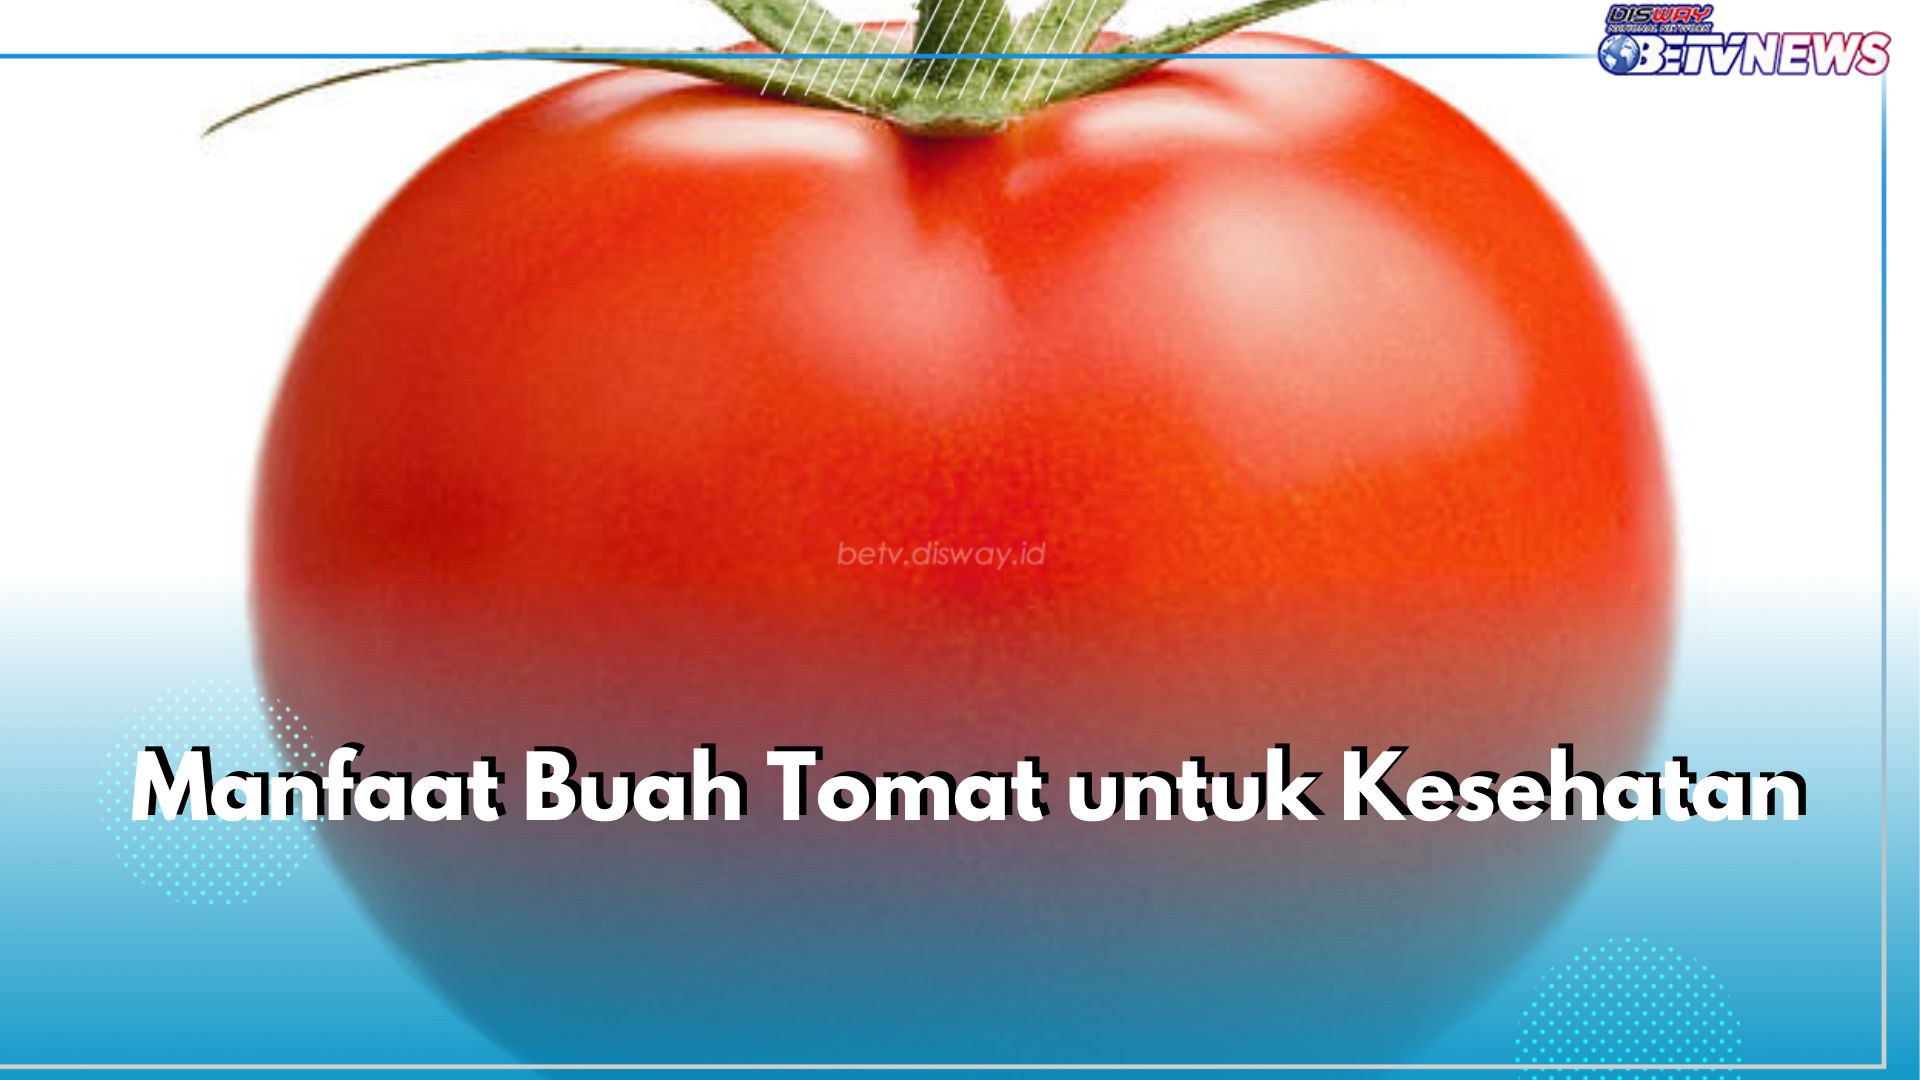 5 Manfaat Buah Tomat untuk Kesehatan yang Jarang Diketahui, Salah Satunya Jaga Kesehatan Jantung 